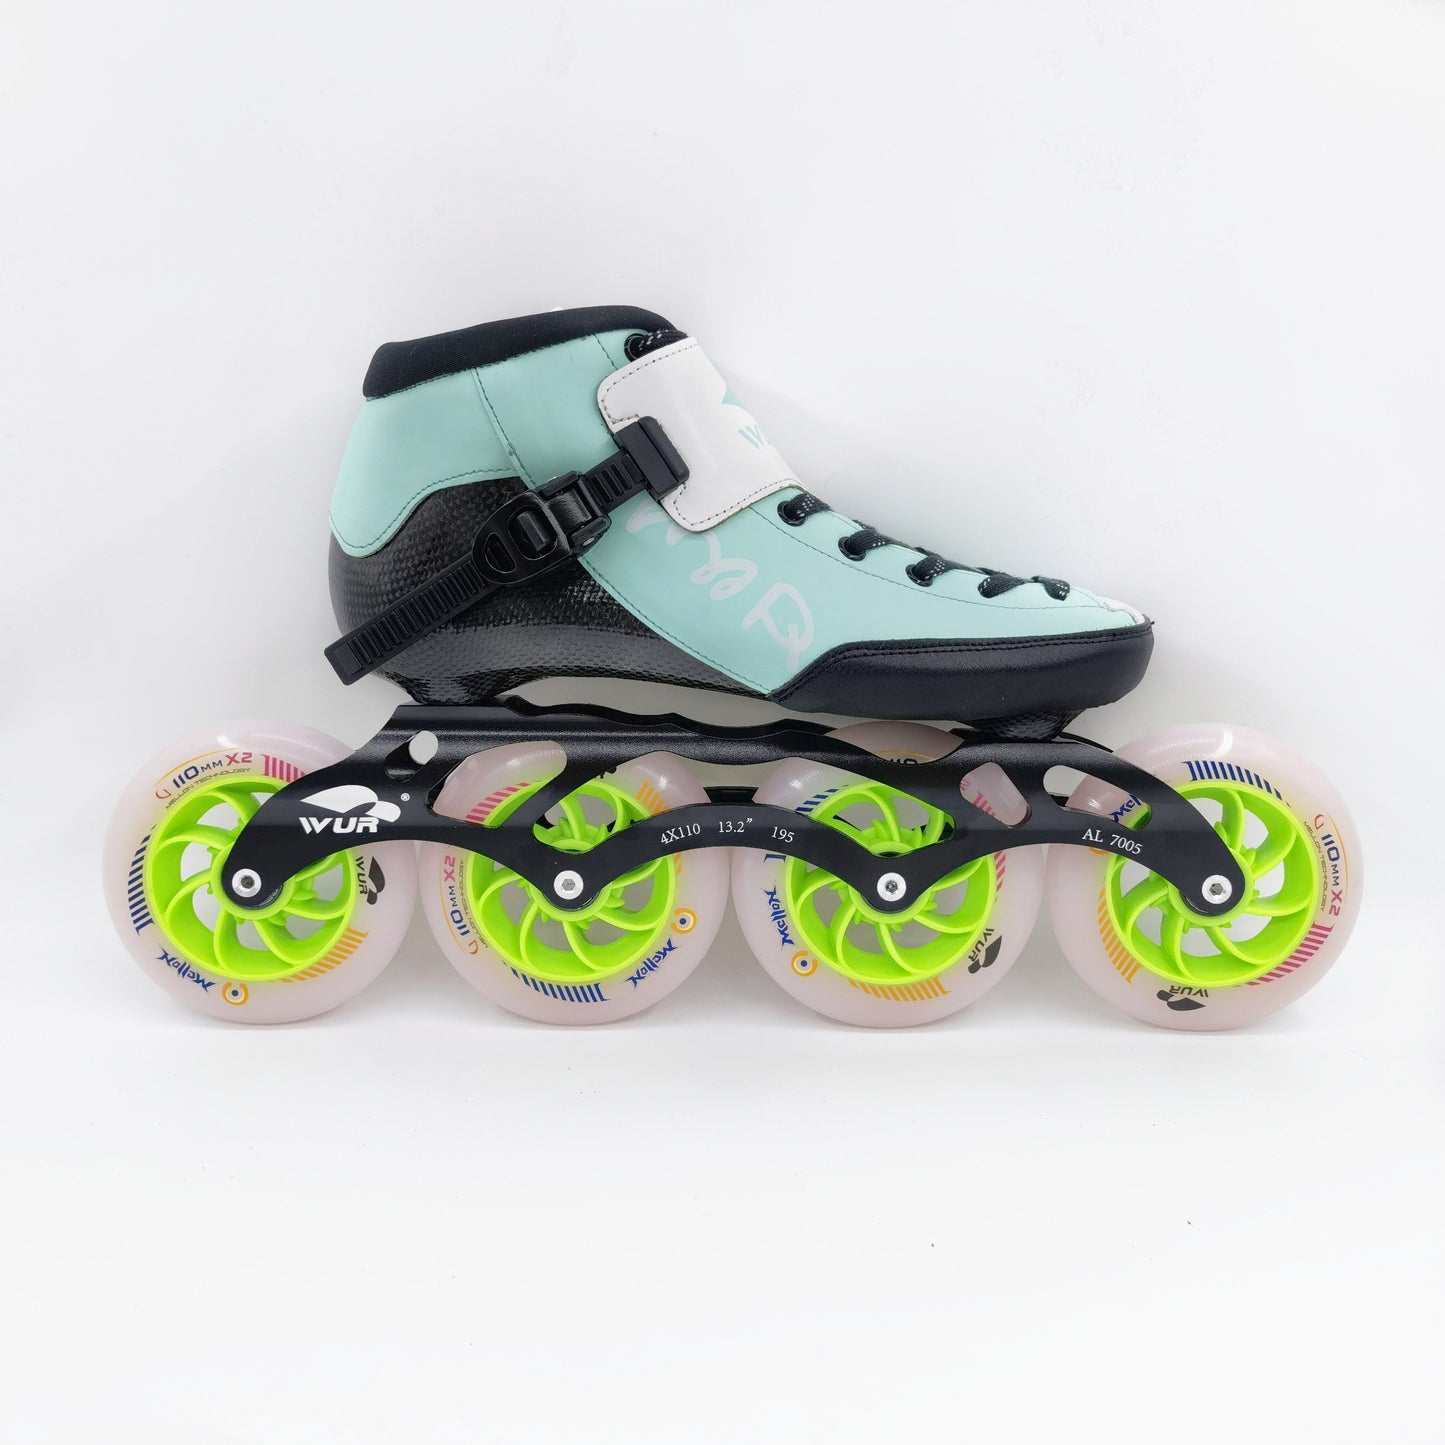 WURSkate model CX Mint speed skate